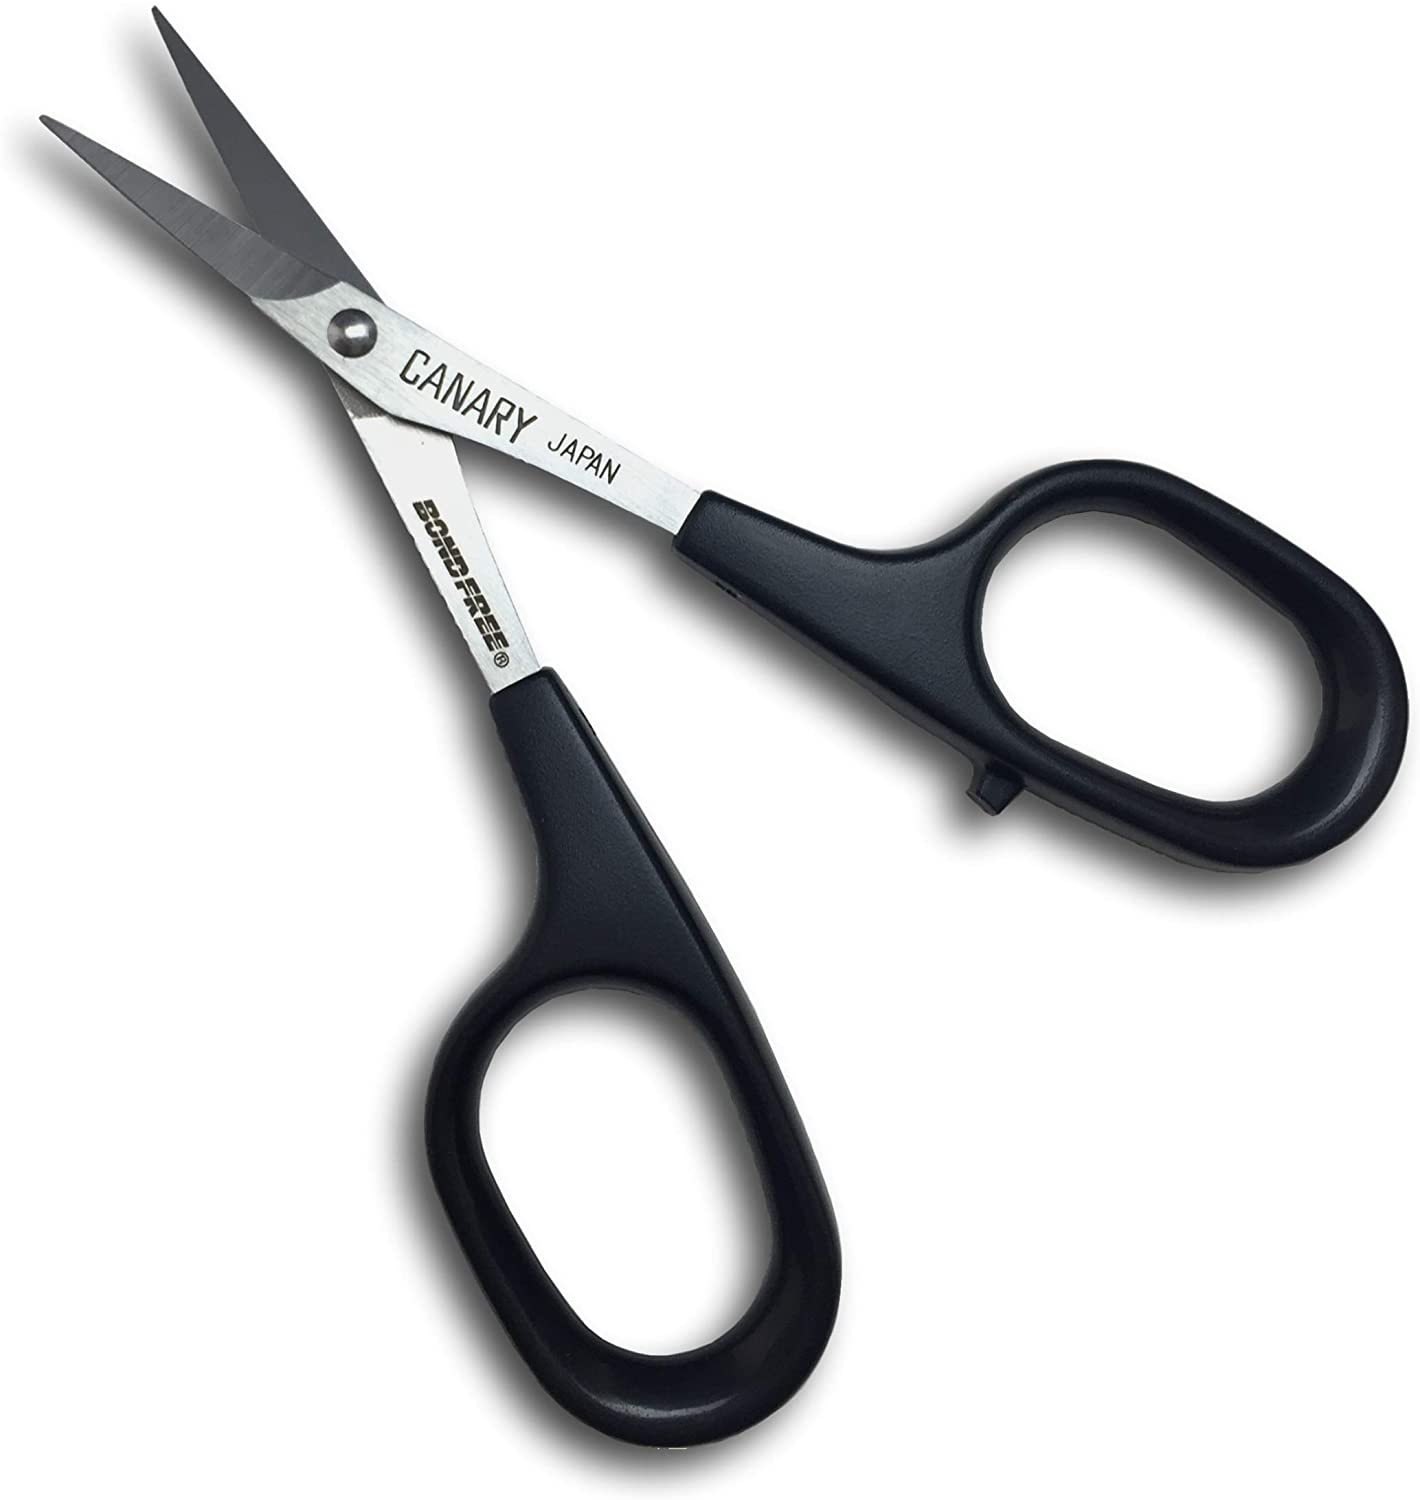 Small Precision Scissors 120mm - Ea/1 - Home Health Store Inc